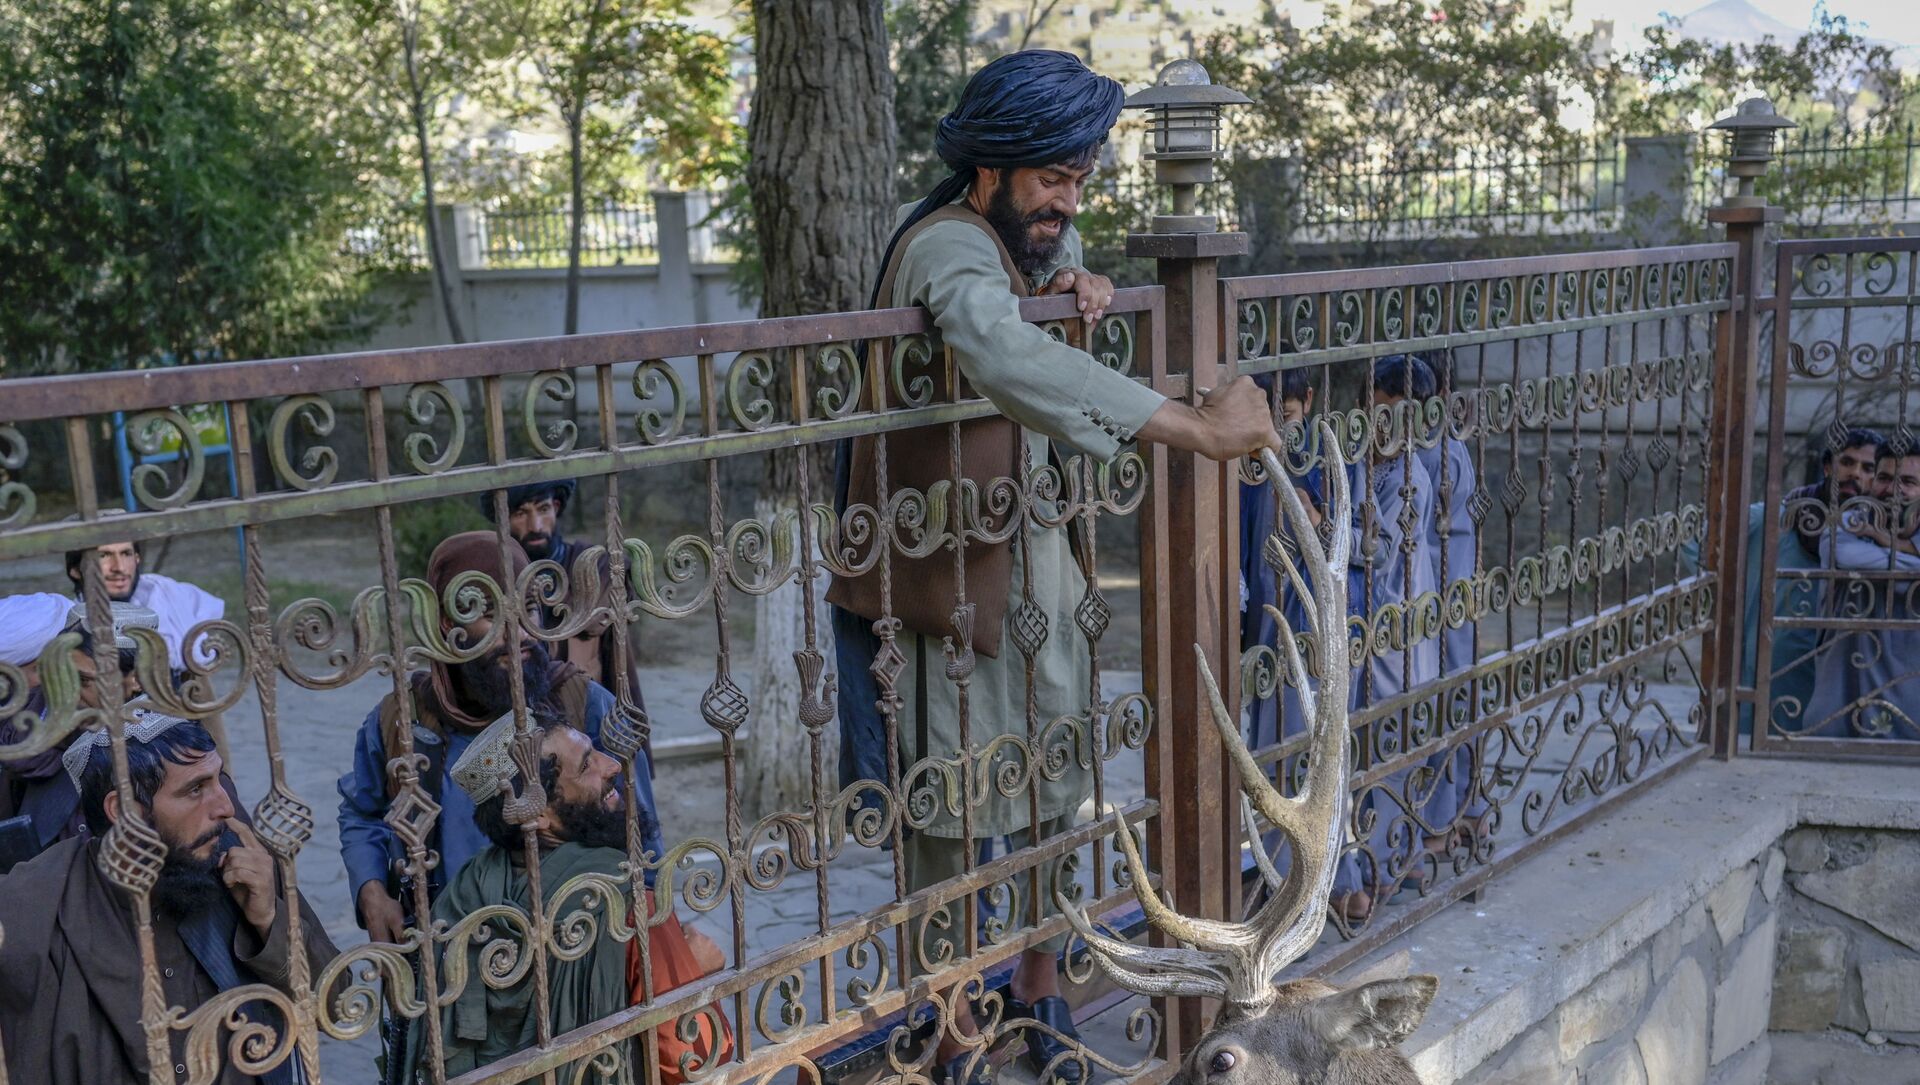 أحد مسلحين حركة طالبان يحاول لمس قرن غزال في حديقة حيوانات في كابول، أفغانستان، 17 سبتمبر 2021 - سبوتنيك عربي, 1920, 29.09.2021